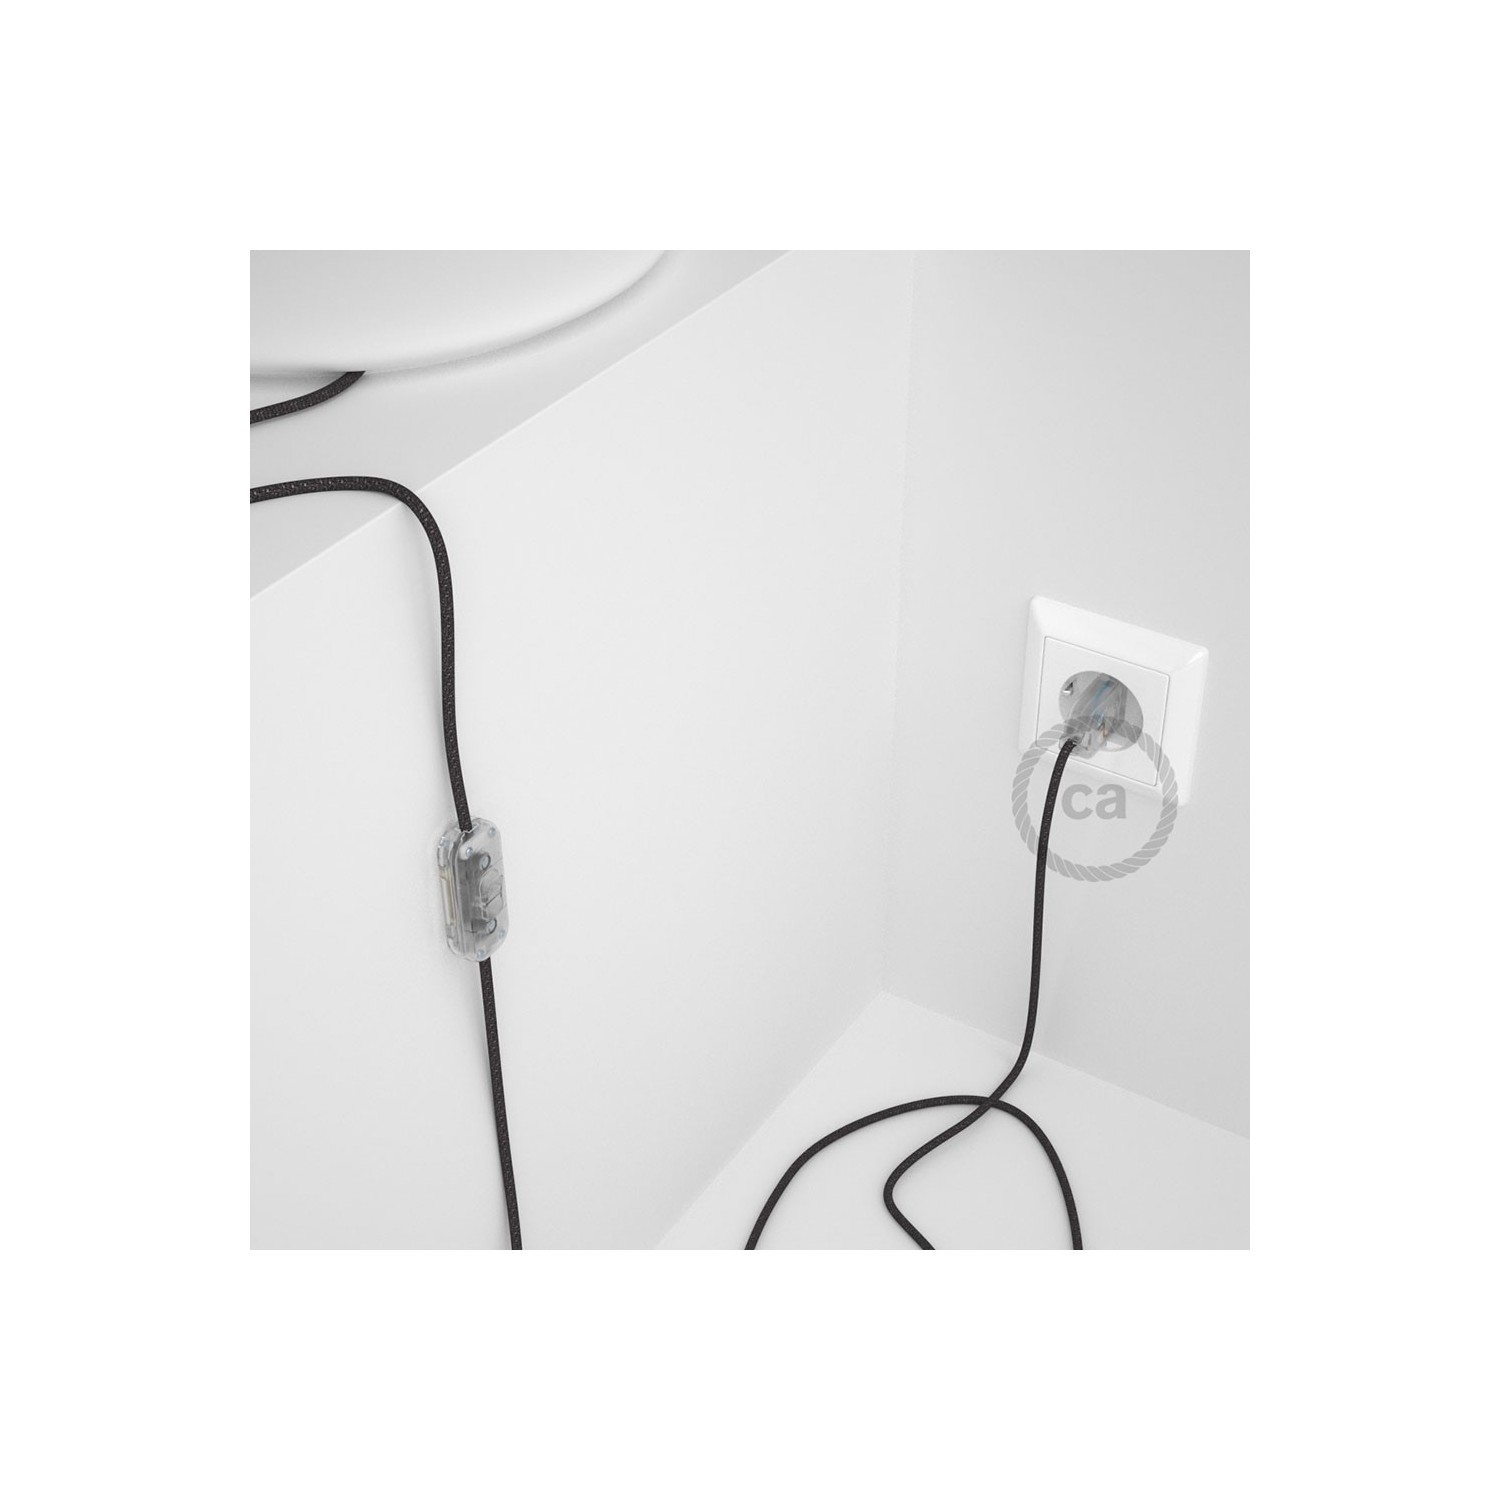 Cordon pour lampe, câble RL03 Effet Soie Paillettes Gris 1,80 m. Choisissez la couleur de la fiche et de l'interrupteur!